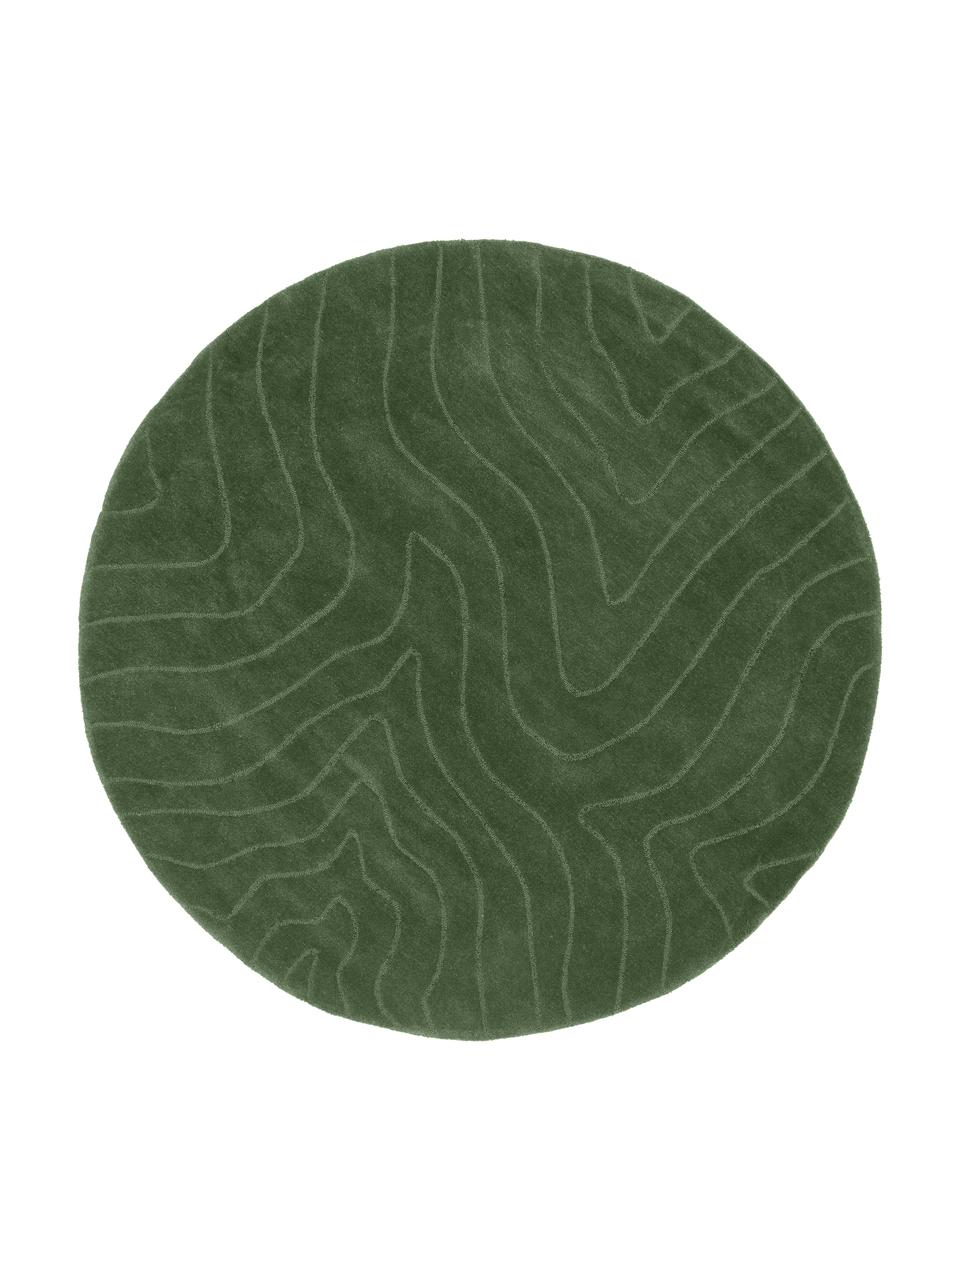 Tapis rond laine vert foncé tufté main Aaron, Vert, Ø 120 cm (taille S)